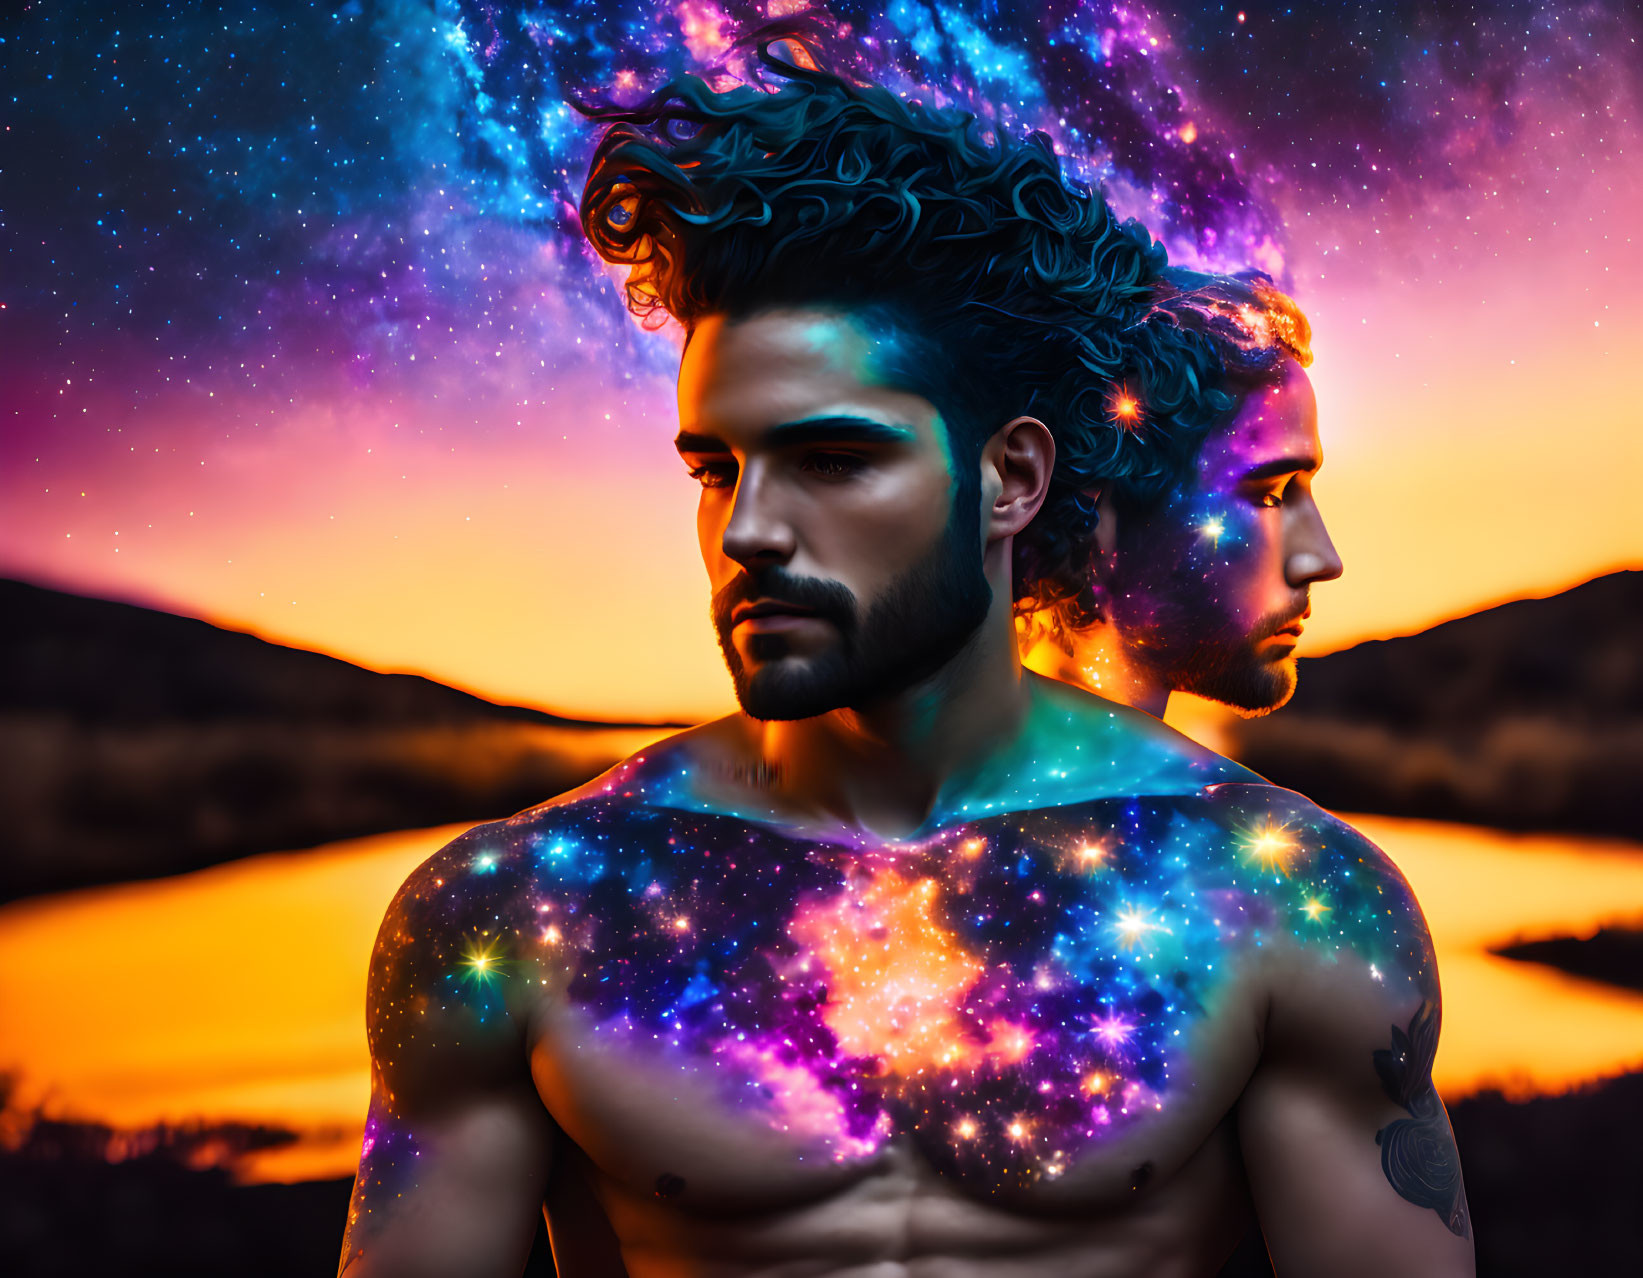 Man merged with cosmic galaxy against sunset, symbolizing unity.